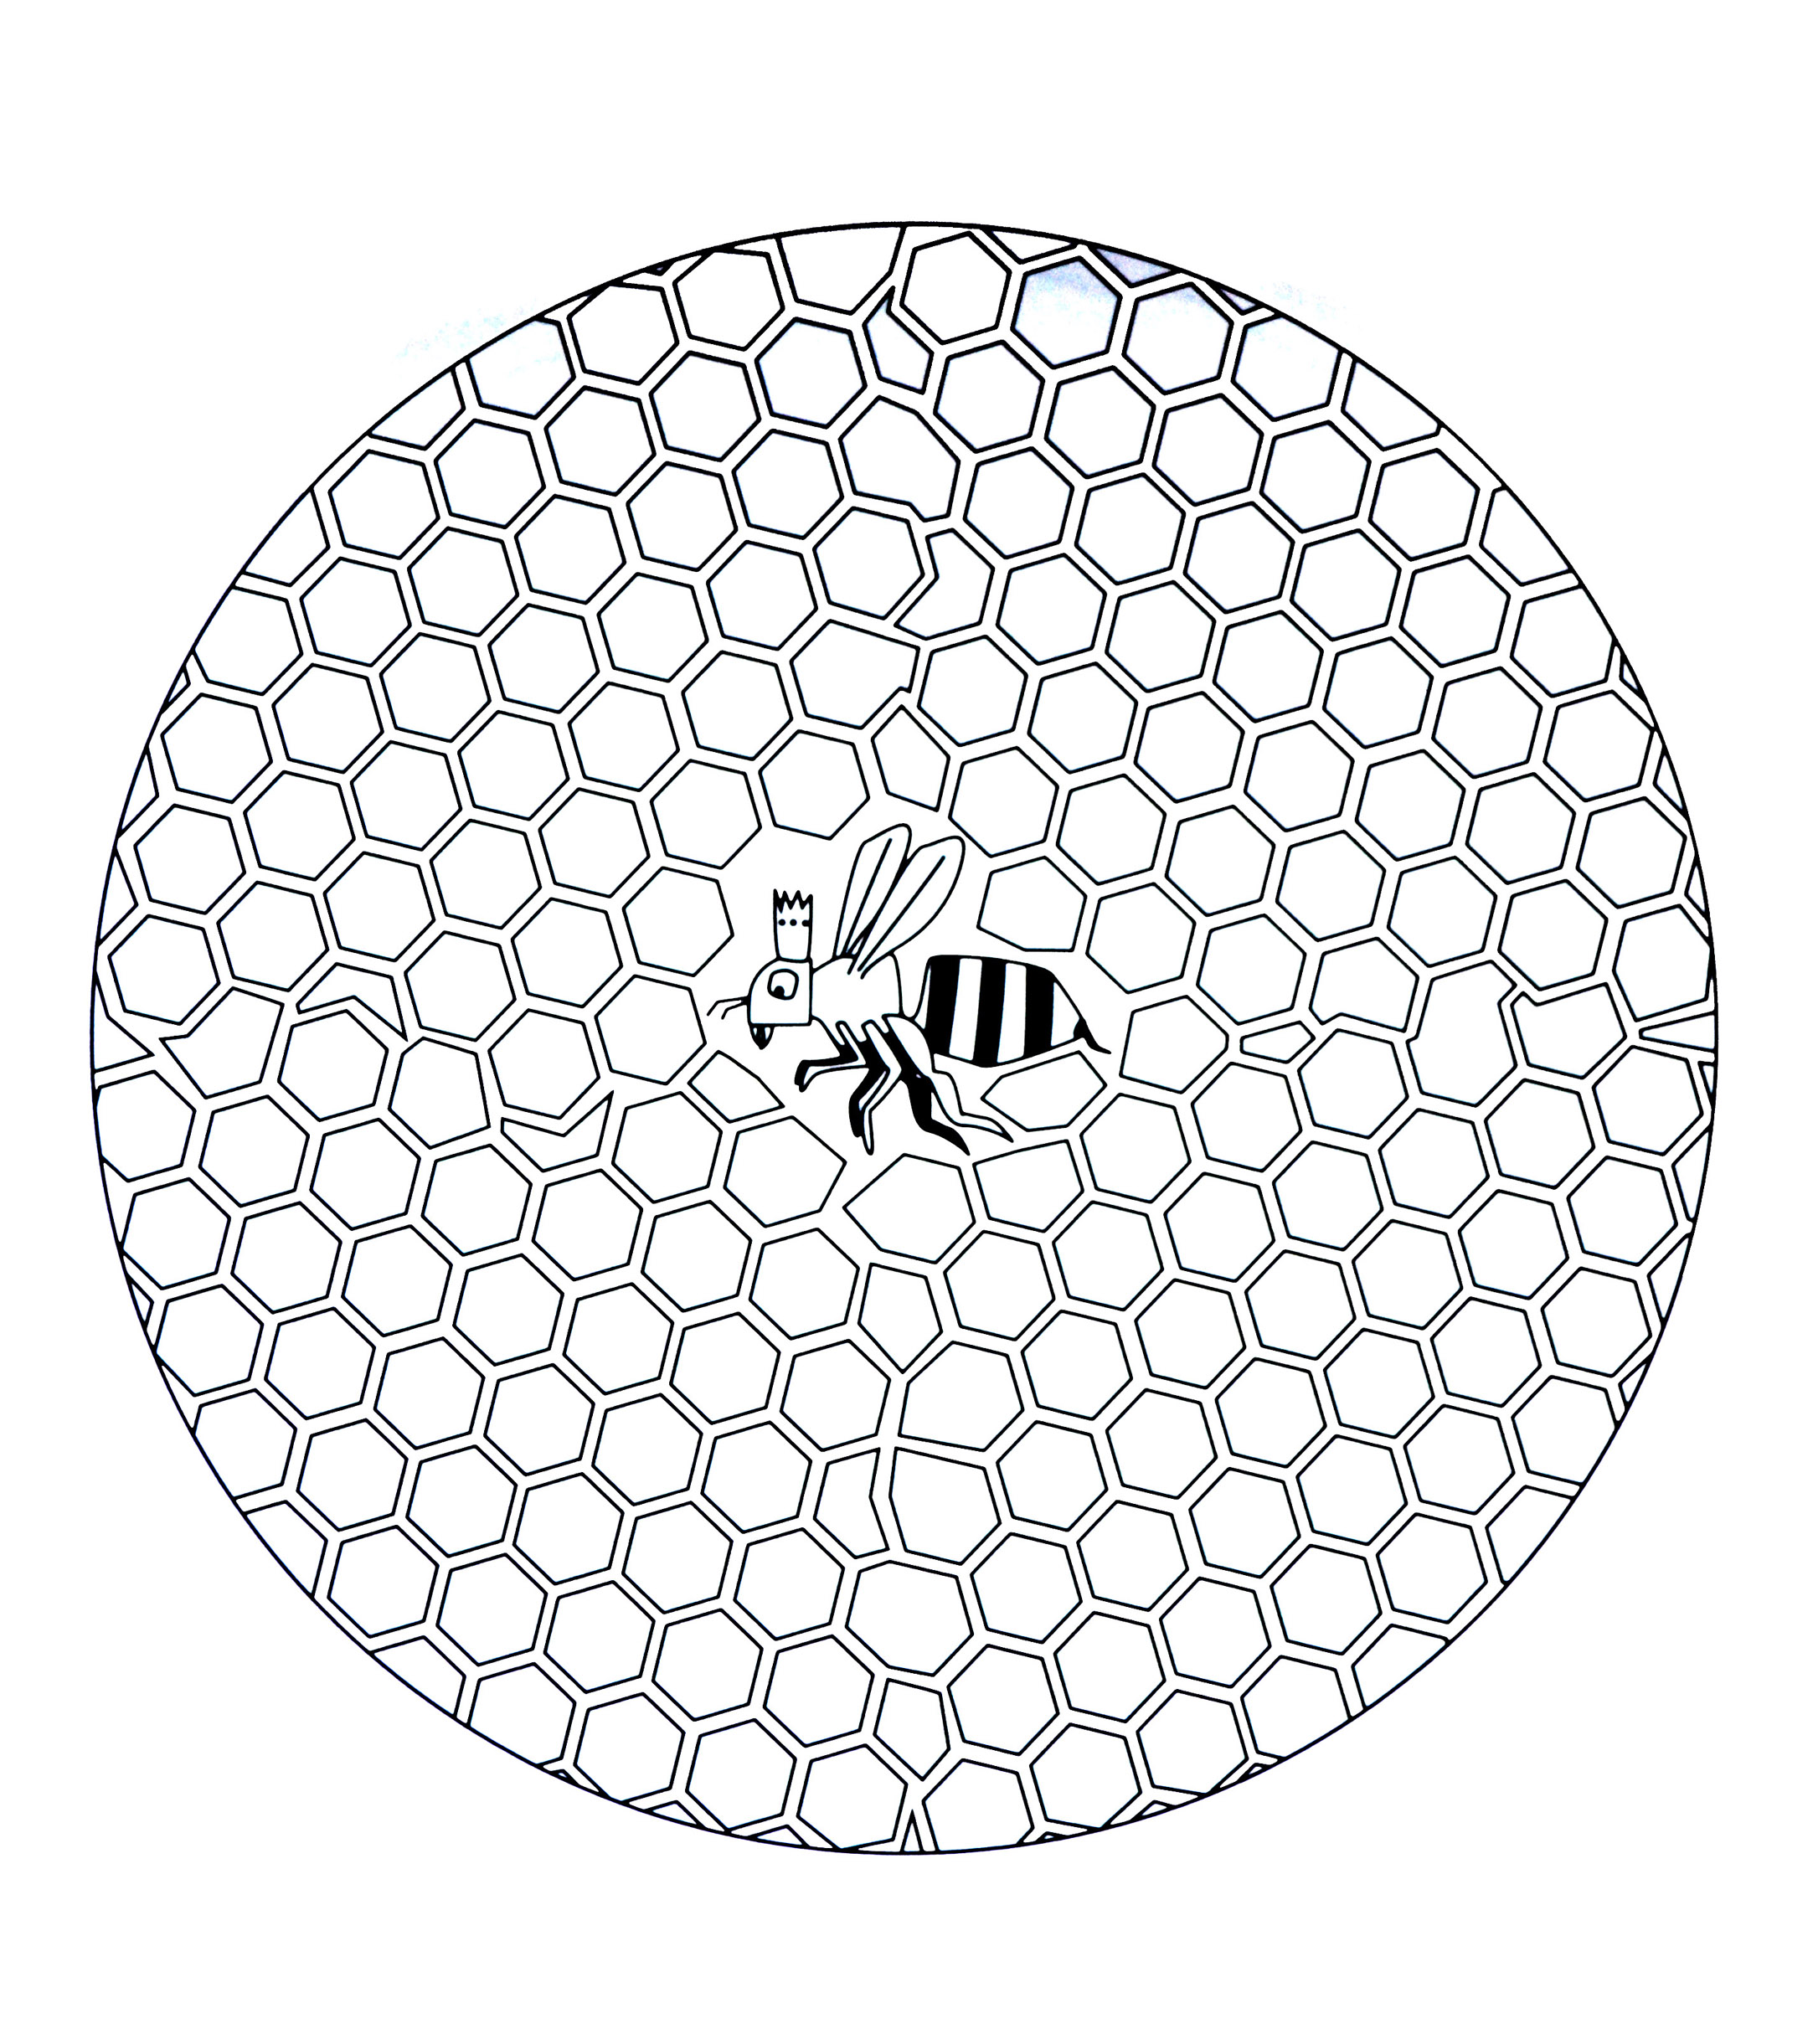 Mandala com padrões geométricos - 10 - Imagem com :Abelha